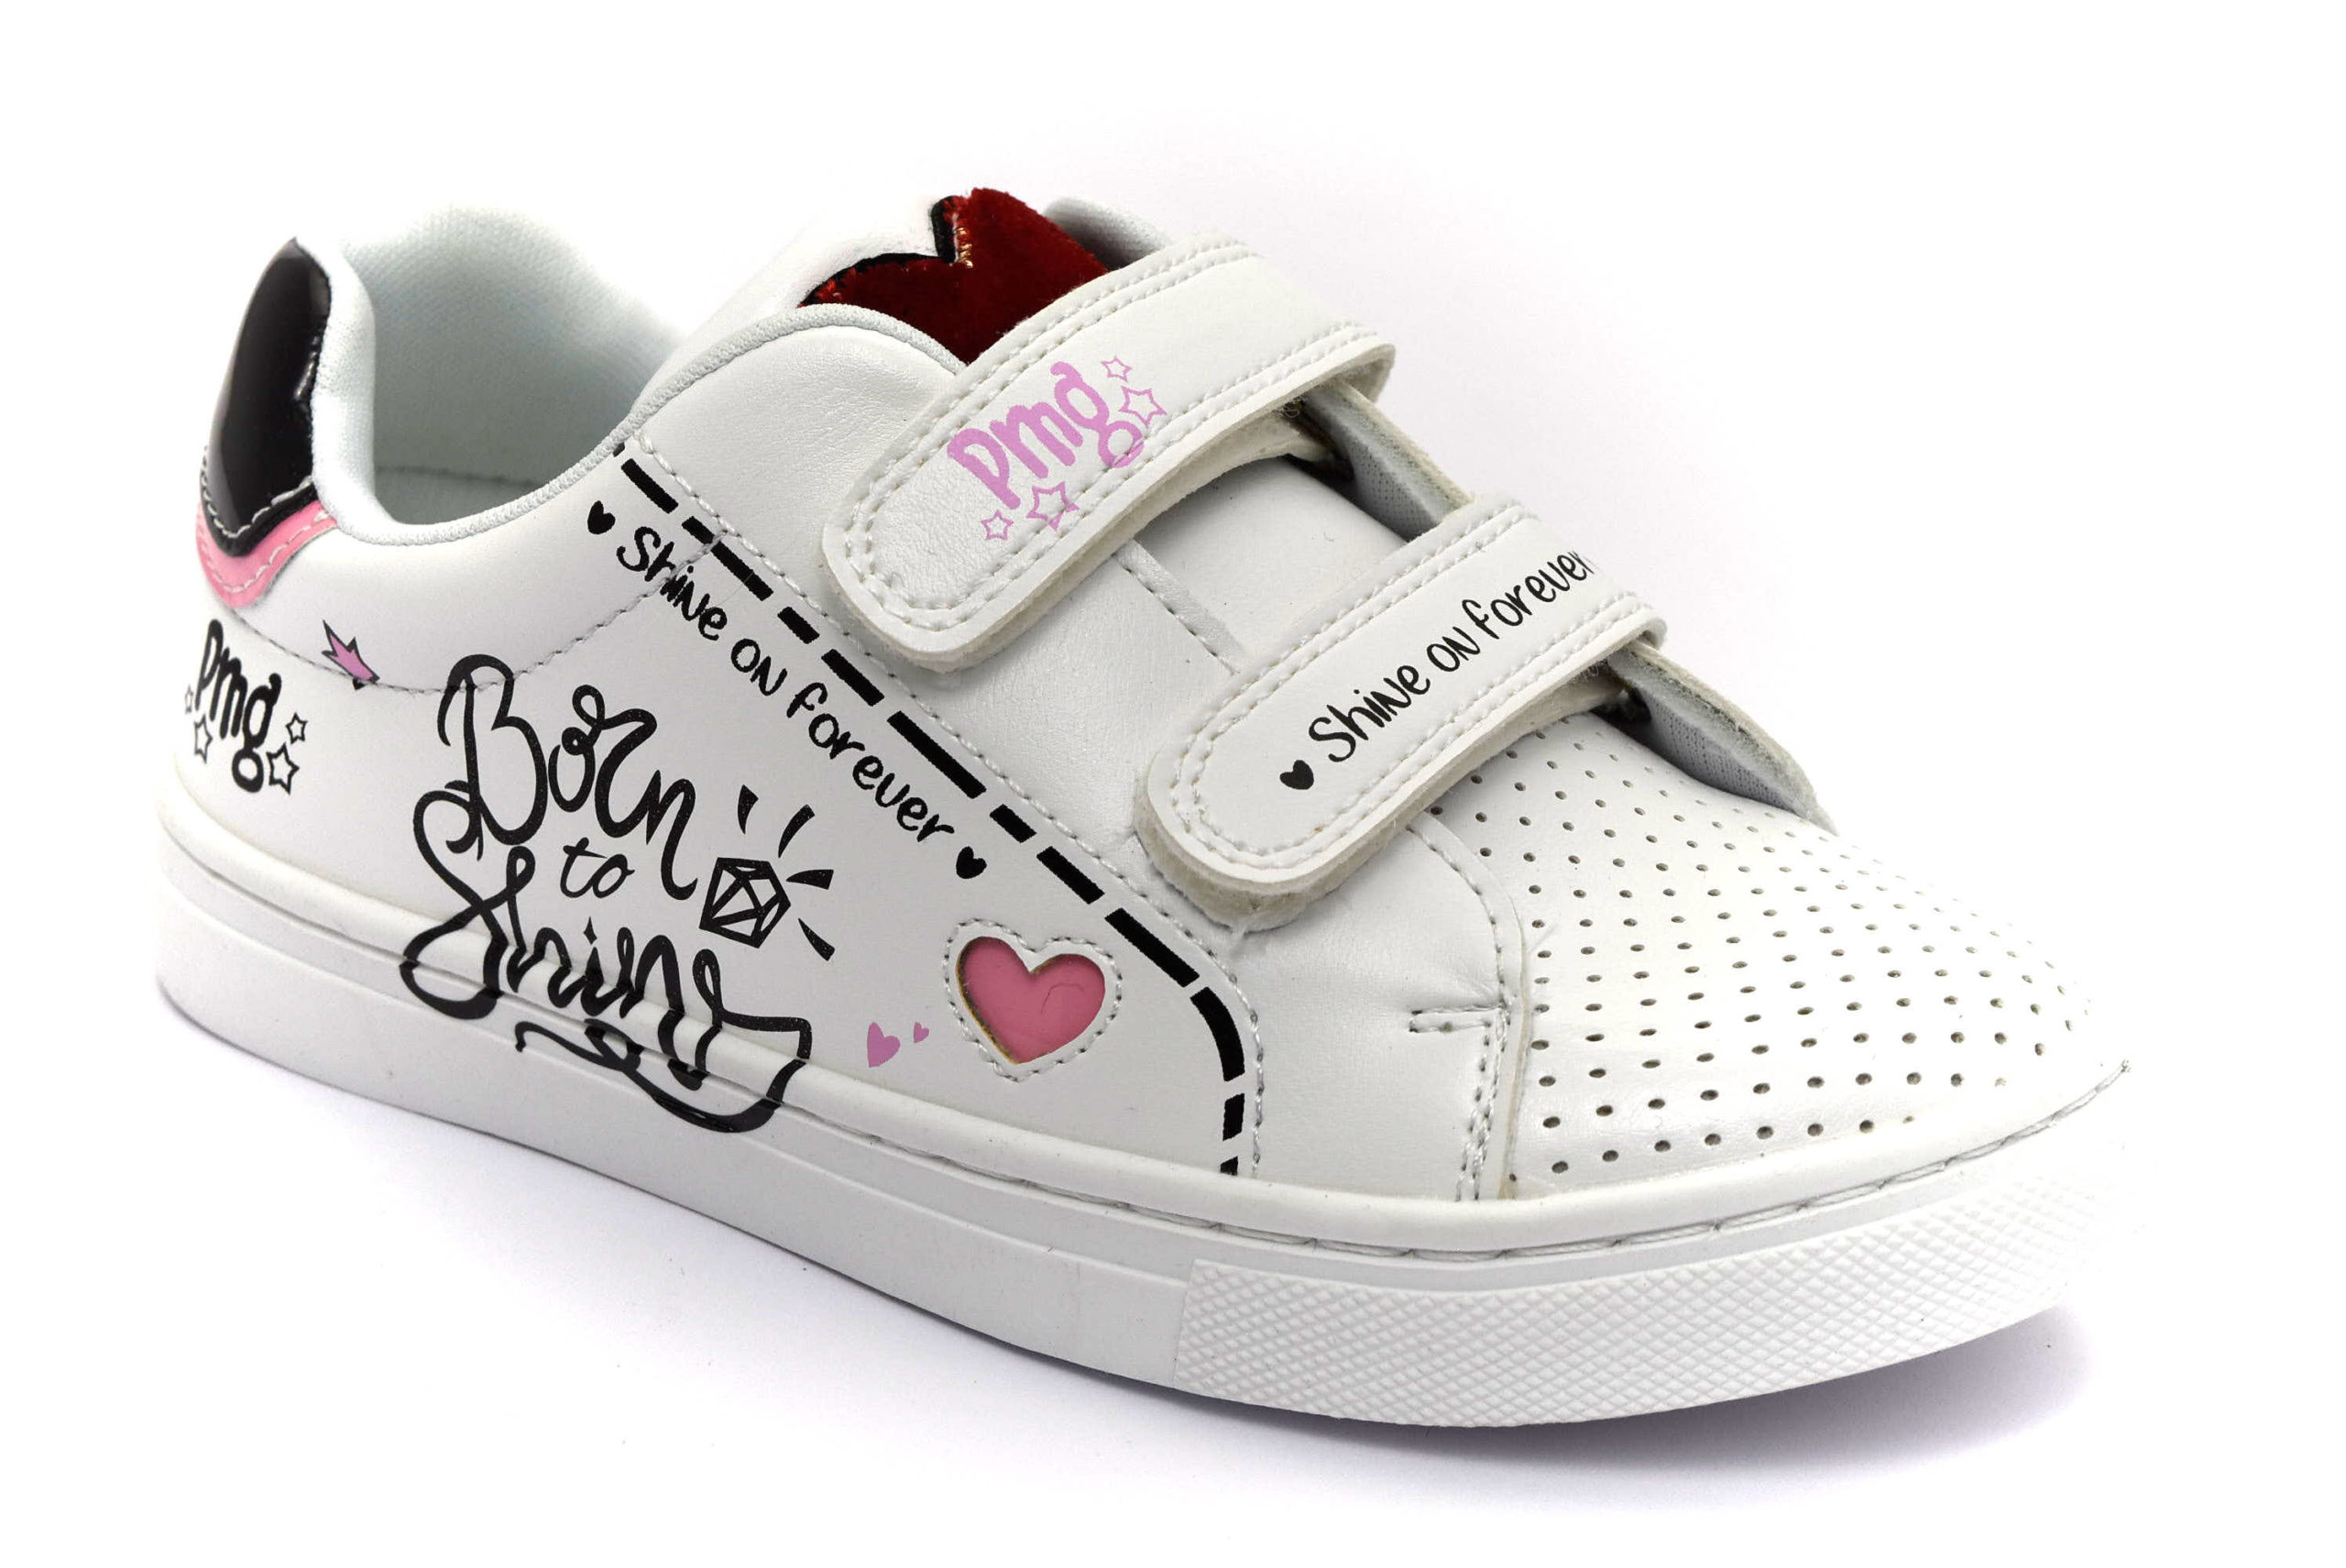 PRIMIGI 5457000 BIANCO Scarpe Ginnastica Strappi Sneakers Scuola Estive  Bambina | eBay